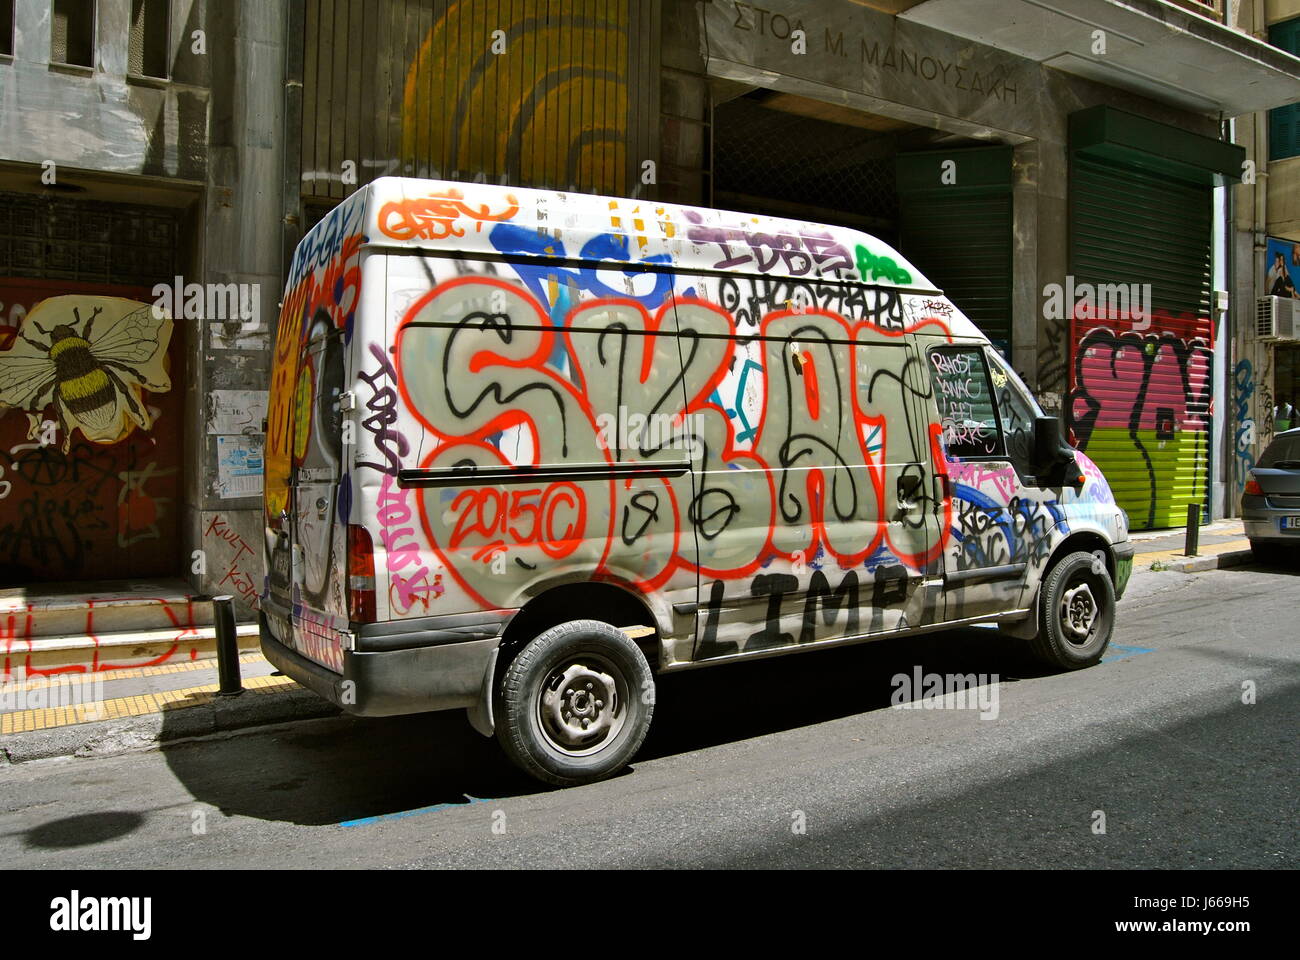 Graffiti on van, Exarcheia, Athens, Greece Stock Photo - Alamy